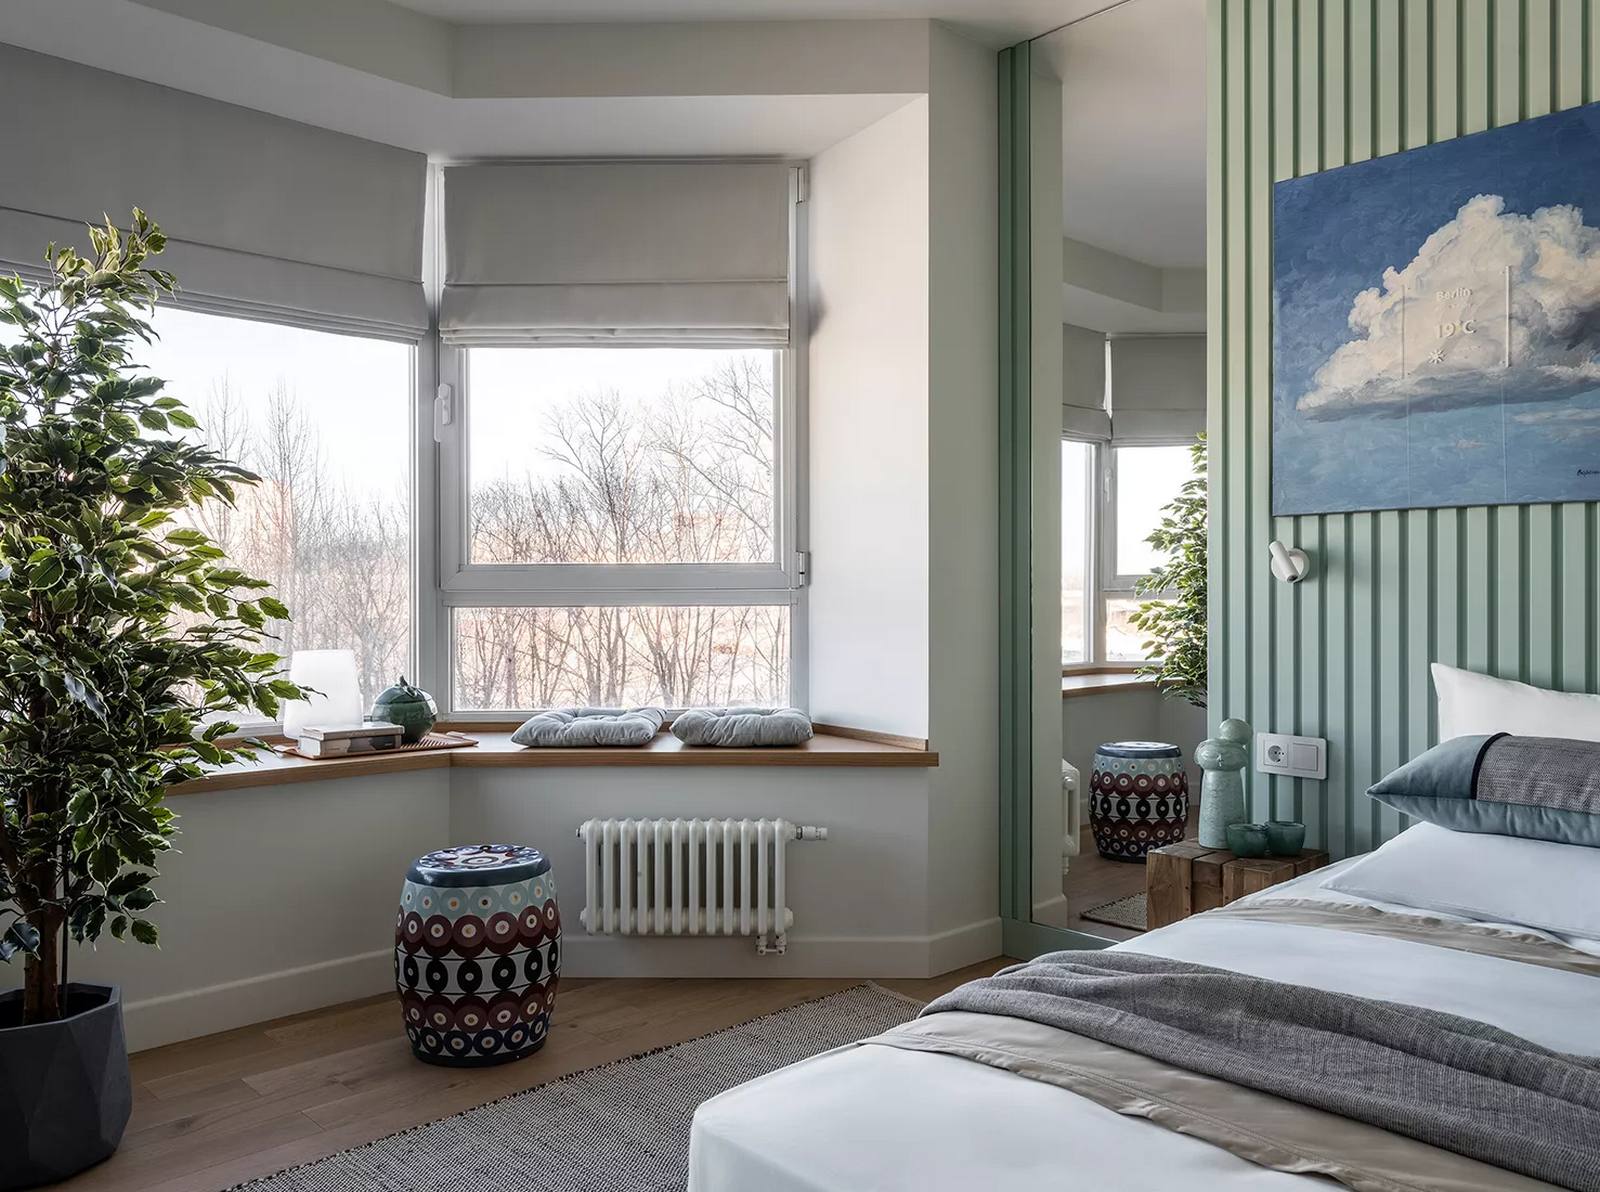 Phòng ngủ với cửa sổ được tận dụng làm khu vực “chill”, nhìn ra khung cảnh lãng mạn. Đầu giường được trang trí bởi tranh vẽ trời xanh mây trắng tươi sáng, bên cạnh là tấm gương lớn khổ dọc giúp 'nhân đôi' căn phòng bằng thị giác.